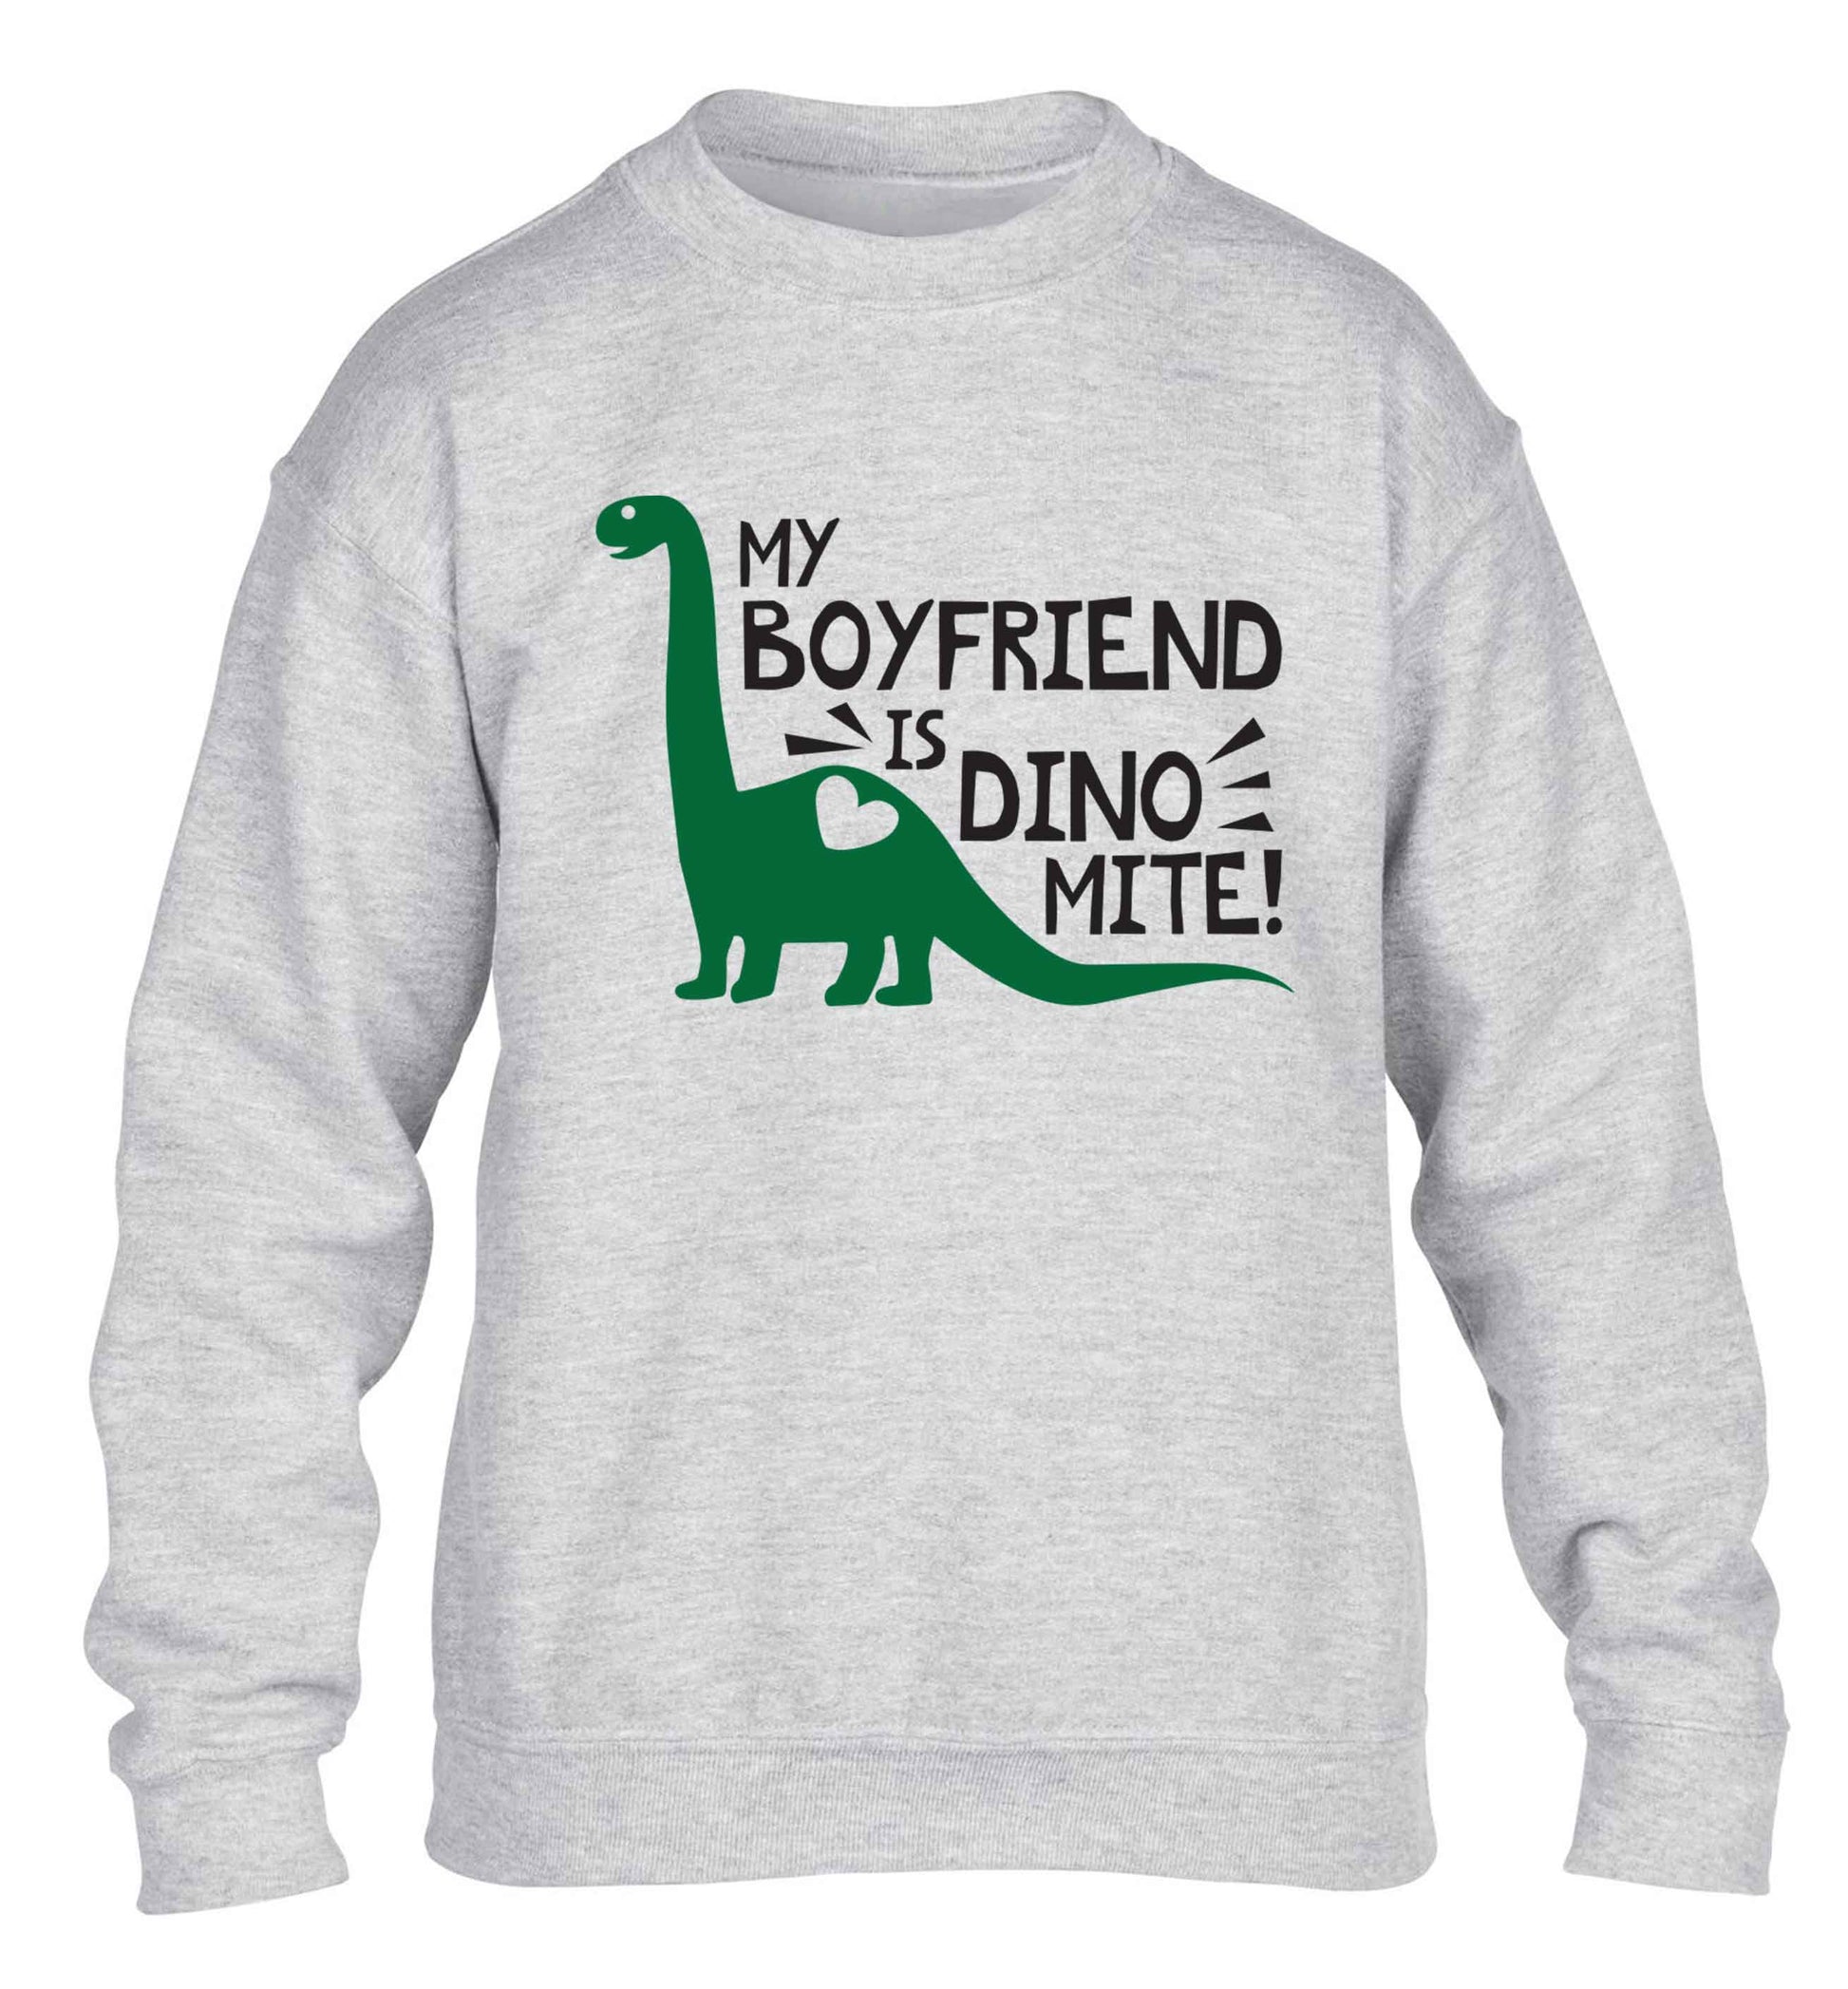 My boyfriend is dinomite! children's grey sweater 12-13 Years